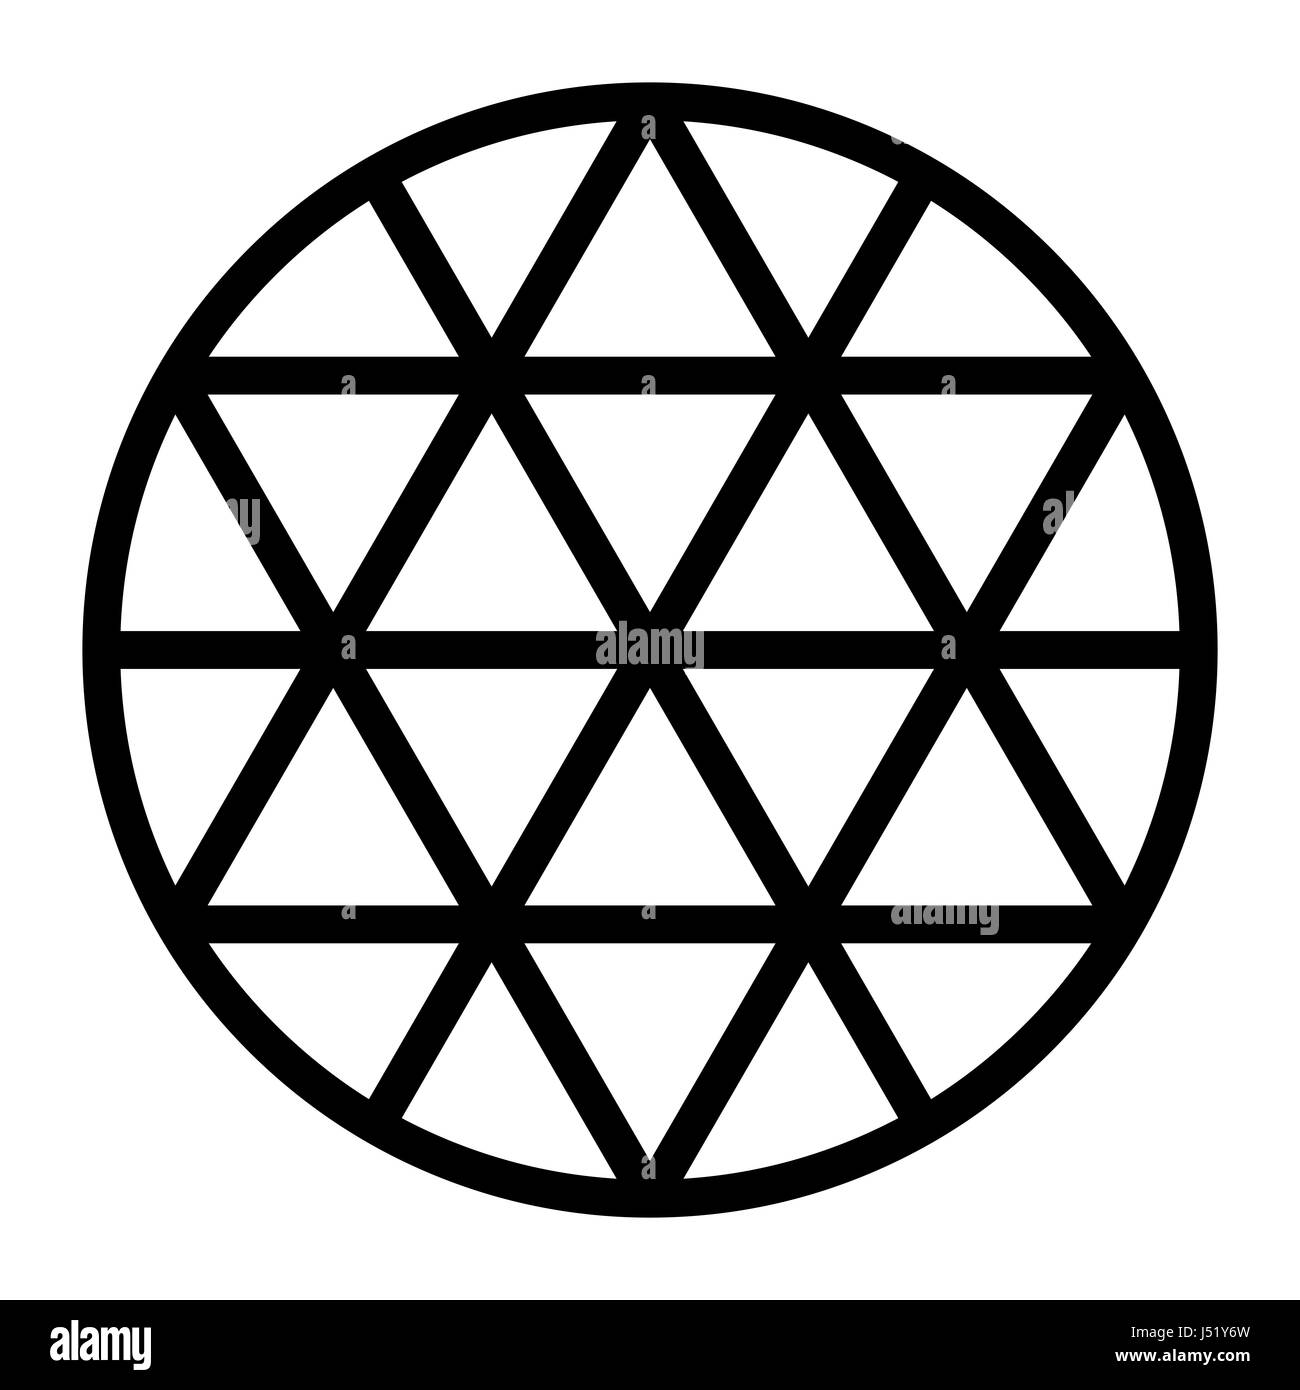 Schwarzen Hexagramm Netz von Linien in einem Kreis erzeugt. Dreieck-Muster bilden eine Sterne Figur, auch genannt Sexagramm oder Davidstern. Stockfoto